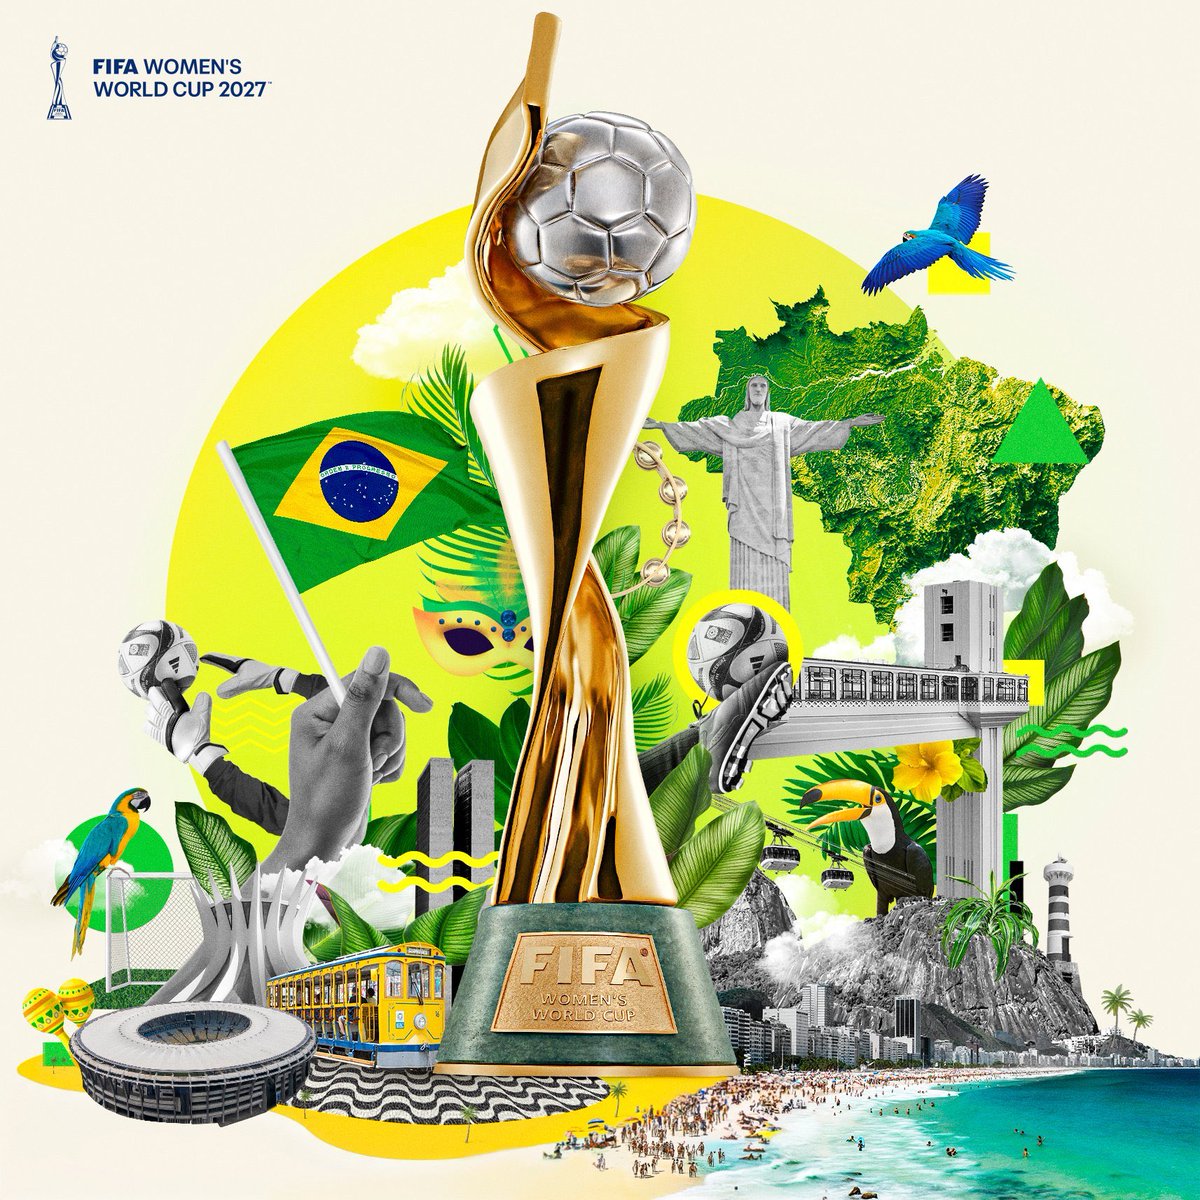 ✅ RESMI: FIFA telah mengumumkan bahwa Brazil terpilih sebagai tuan rumah Piala Dunia Wanita 2027. 🏆 ini adalah pertama kalinya Brazil menjadi tuan rumah Piala Dunia Wanita. 🇧🇷